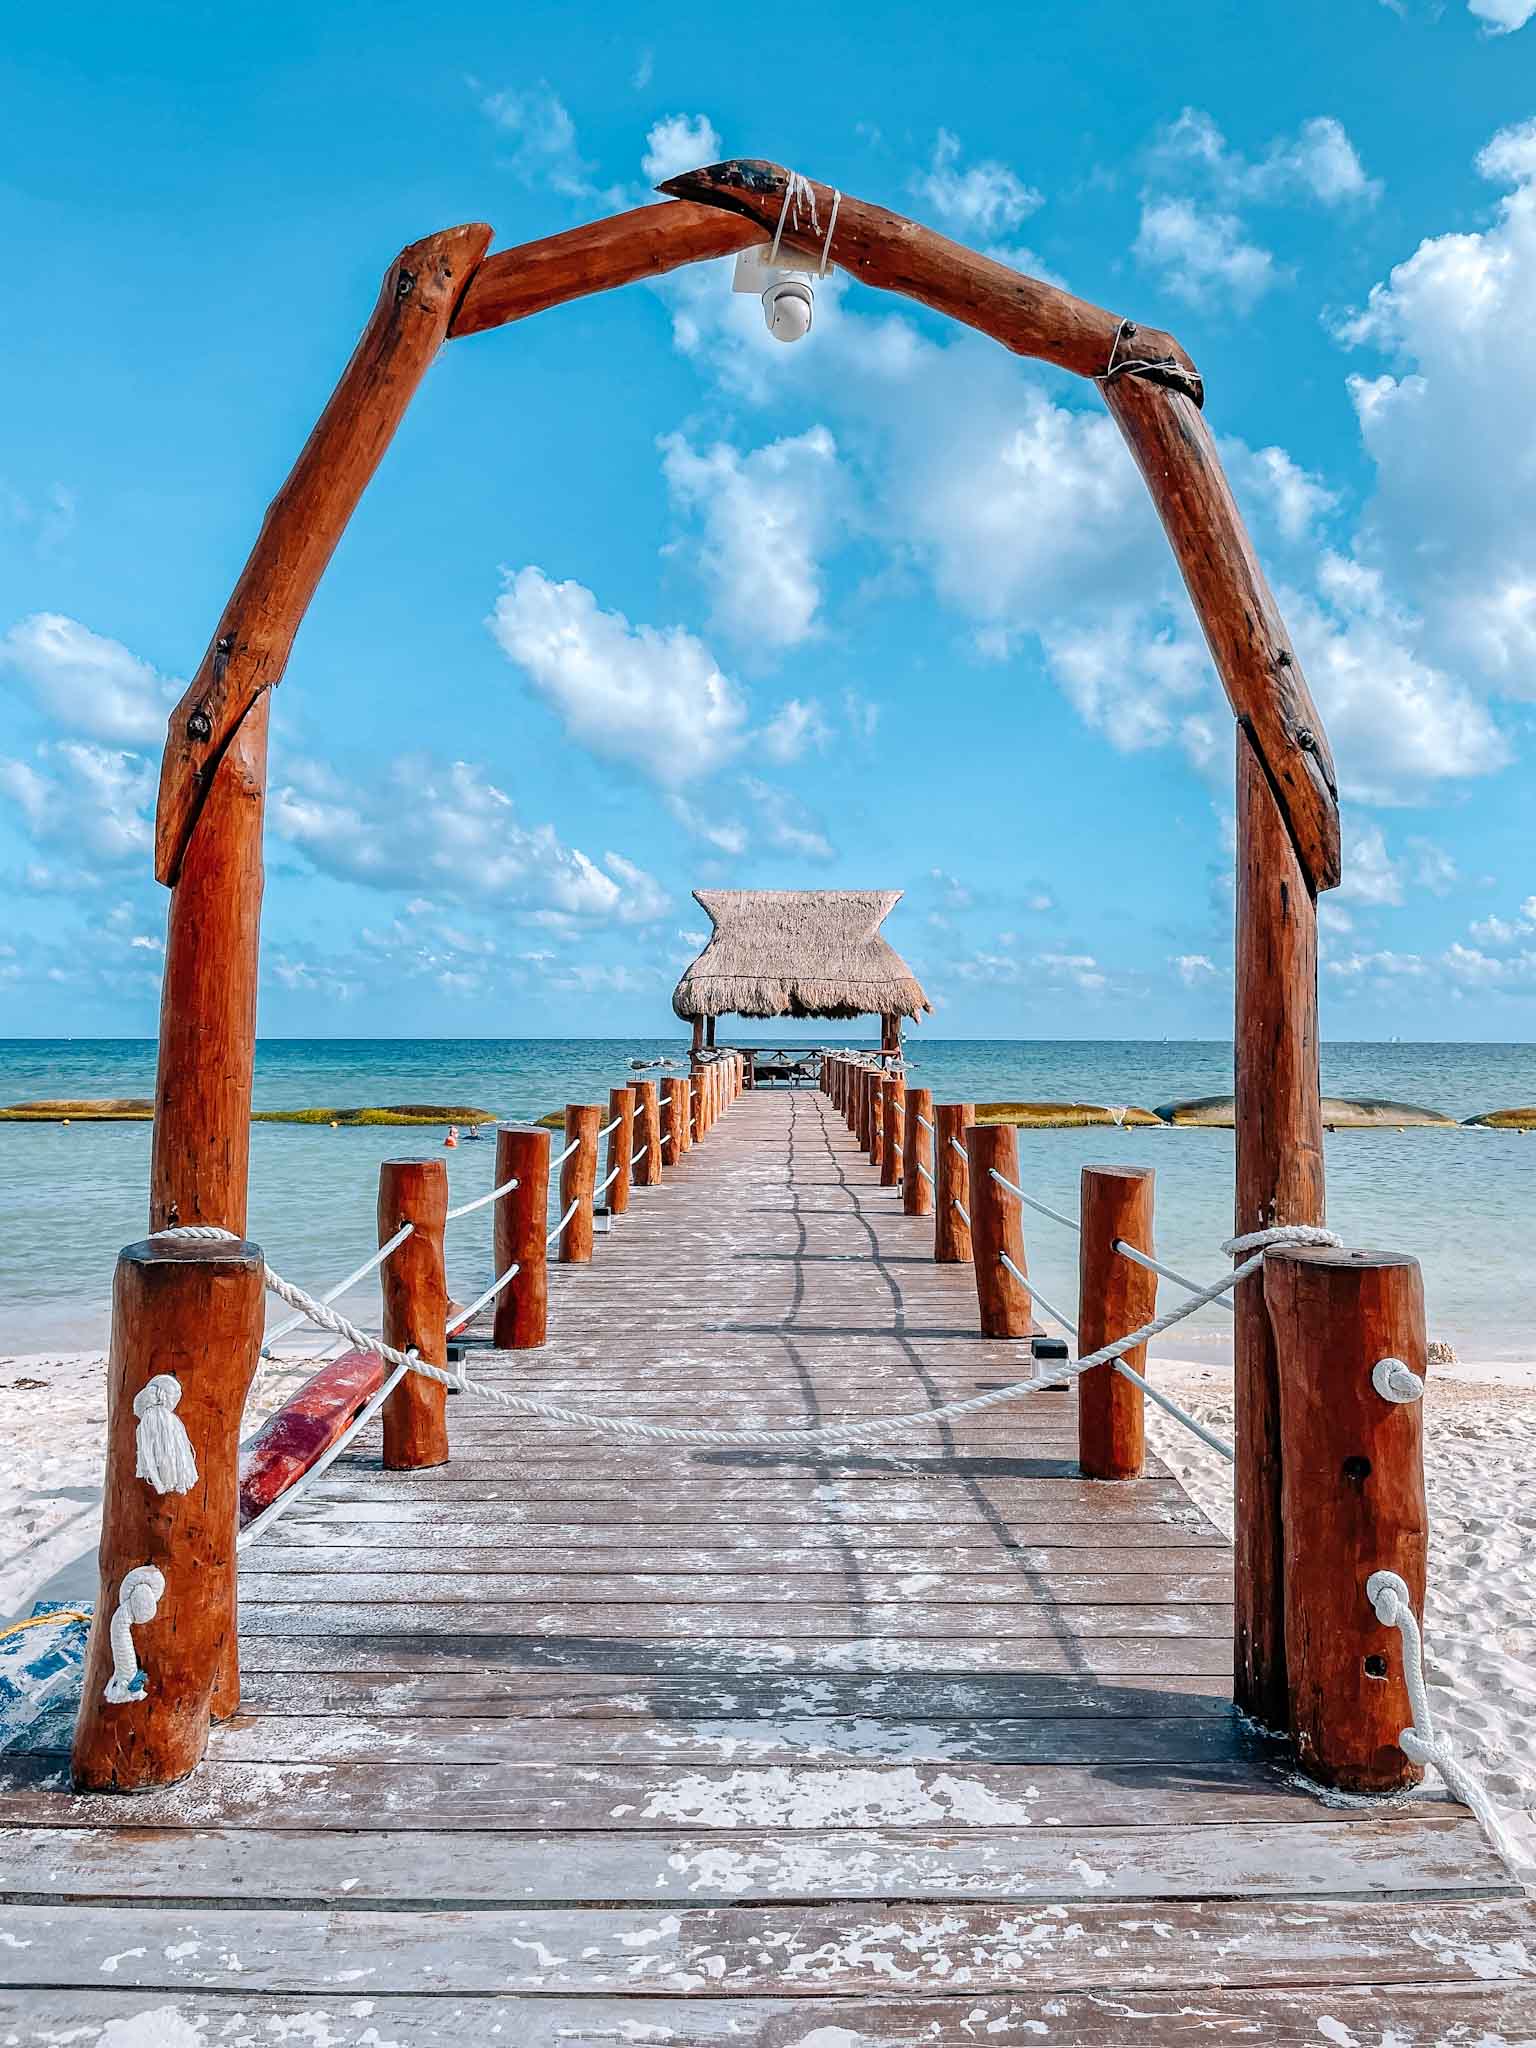 Best Instagram spots in Playa del Carmen Mexico